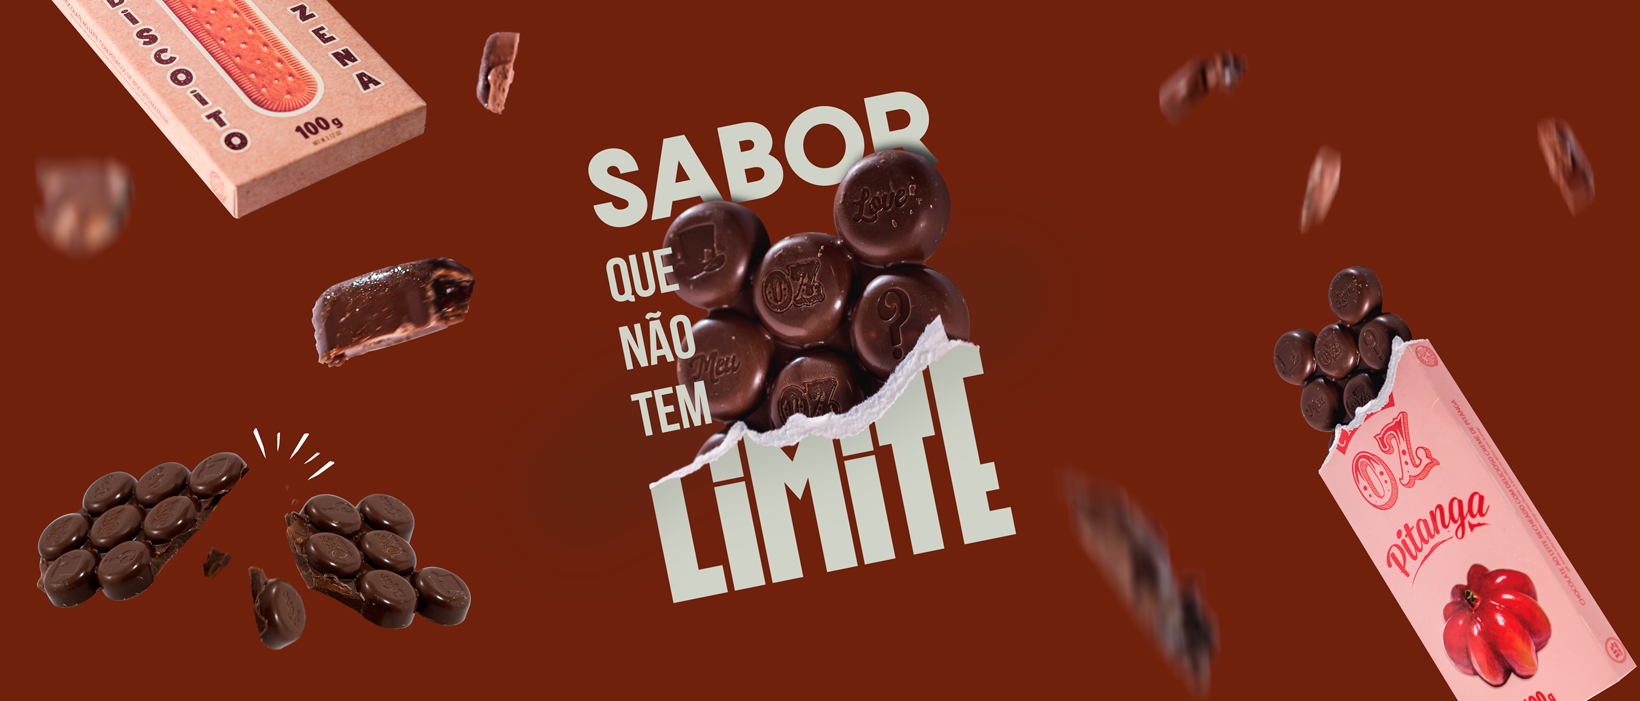 Choco OZ entra no mercado de chocolates com linha zero açúcar